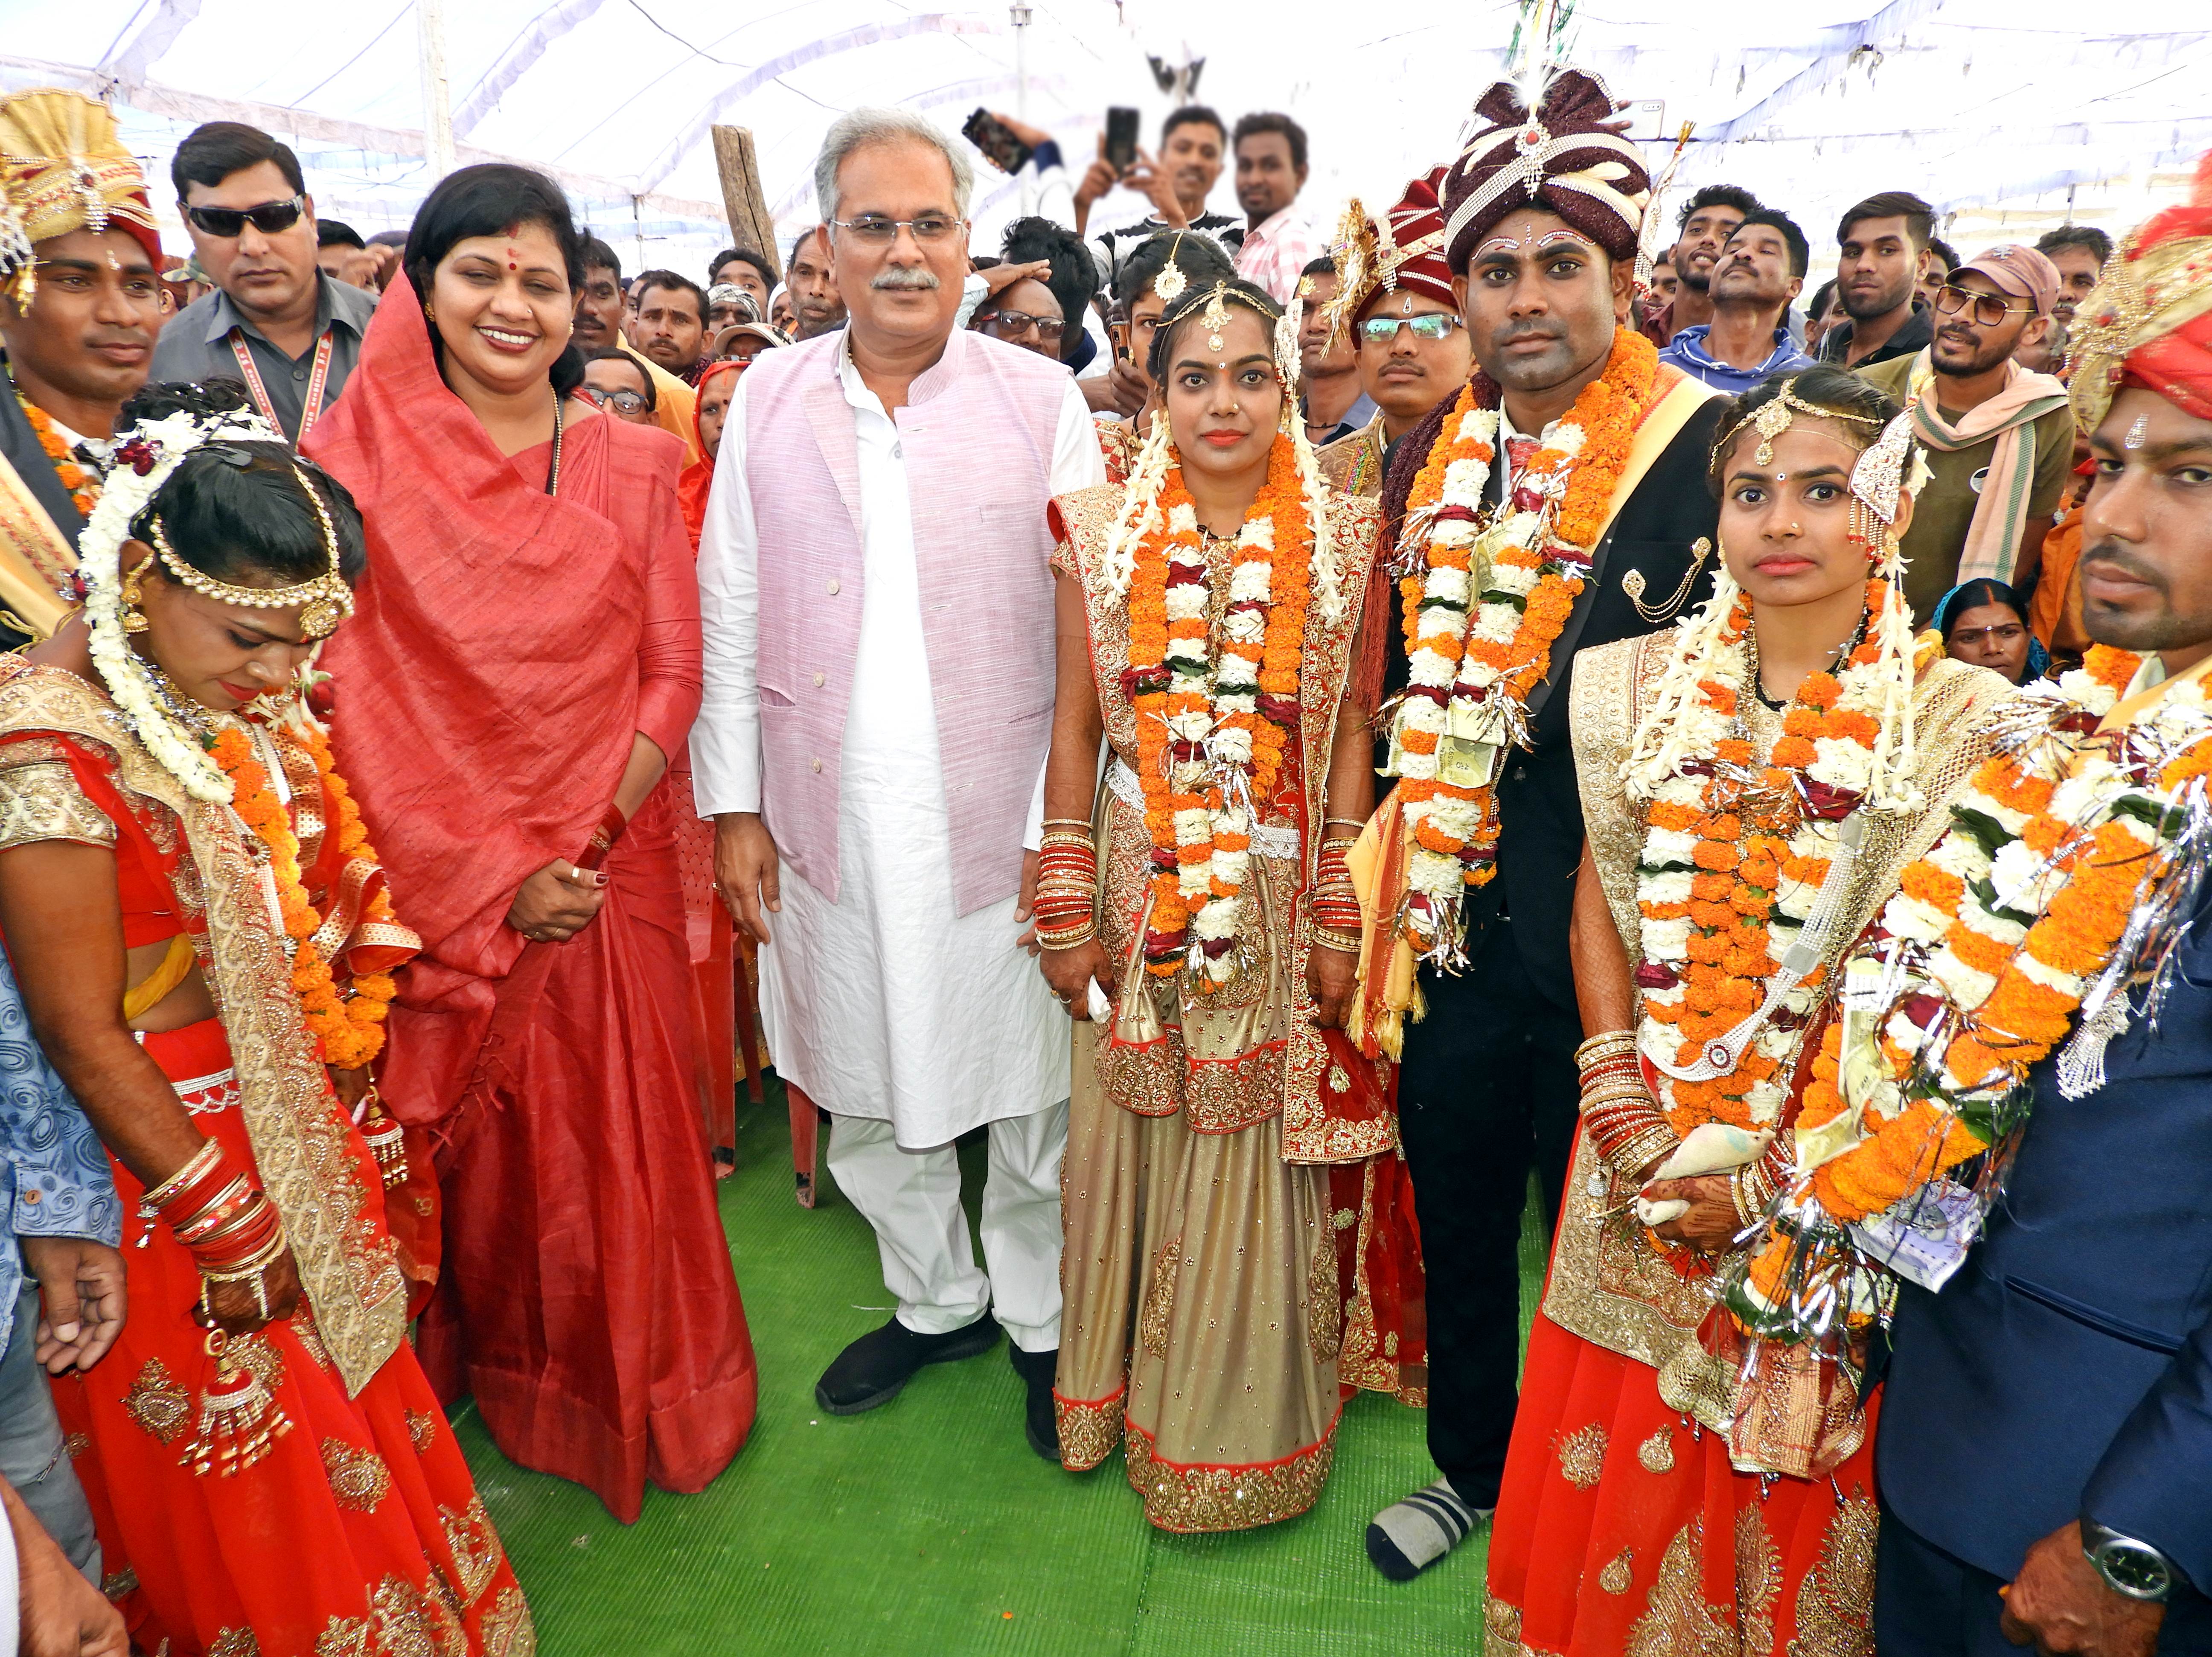 हरदिहा साहू समाज द्वारा आयोजित सामूहिक आदर्श विवाह समारोह में शामिल हुए मुख्यमंत्री